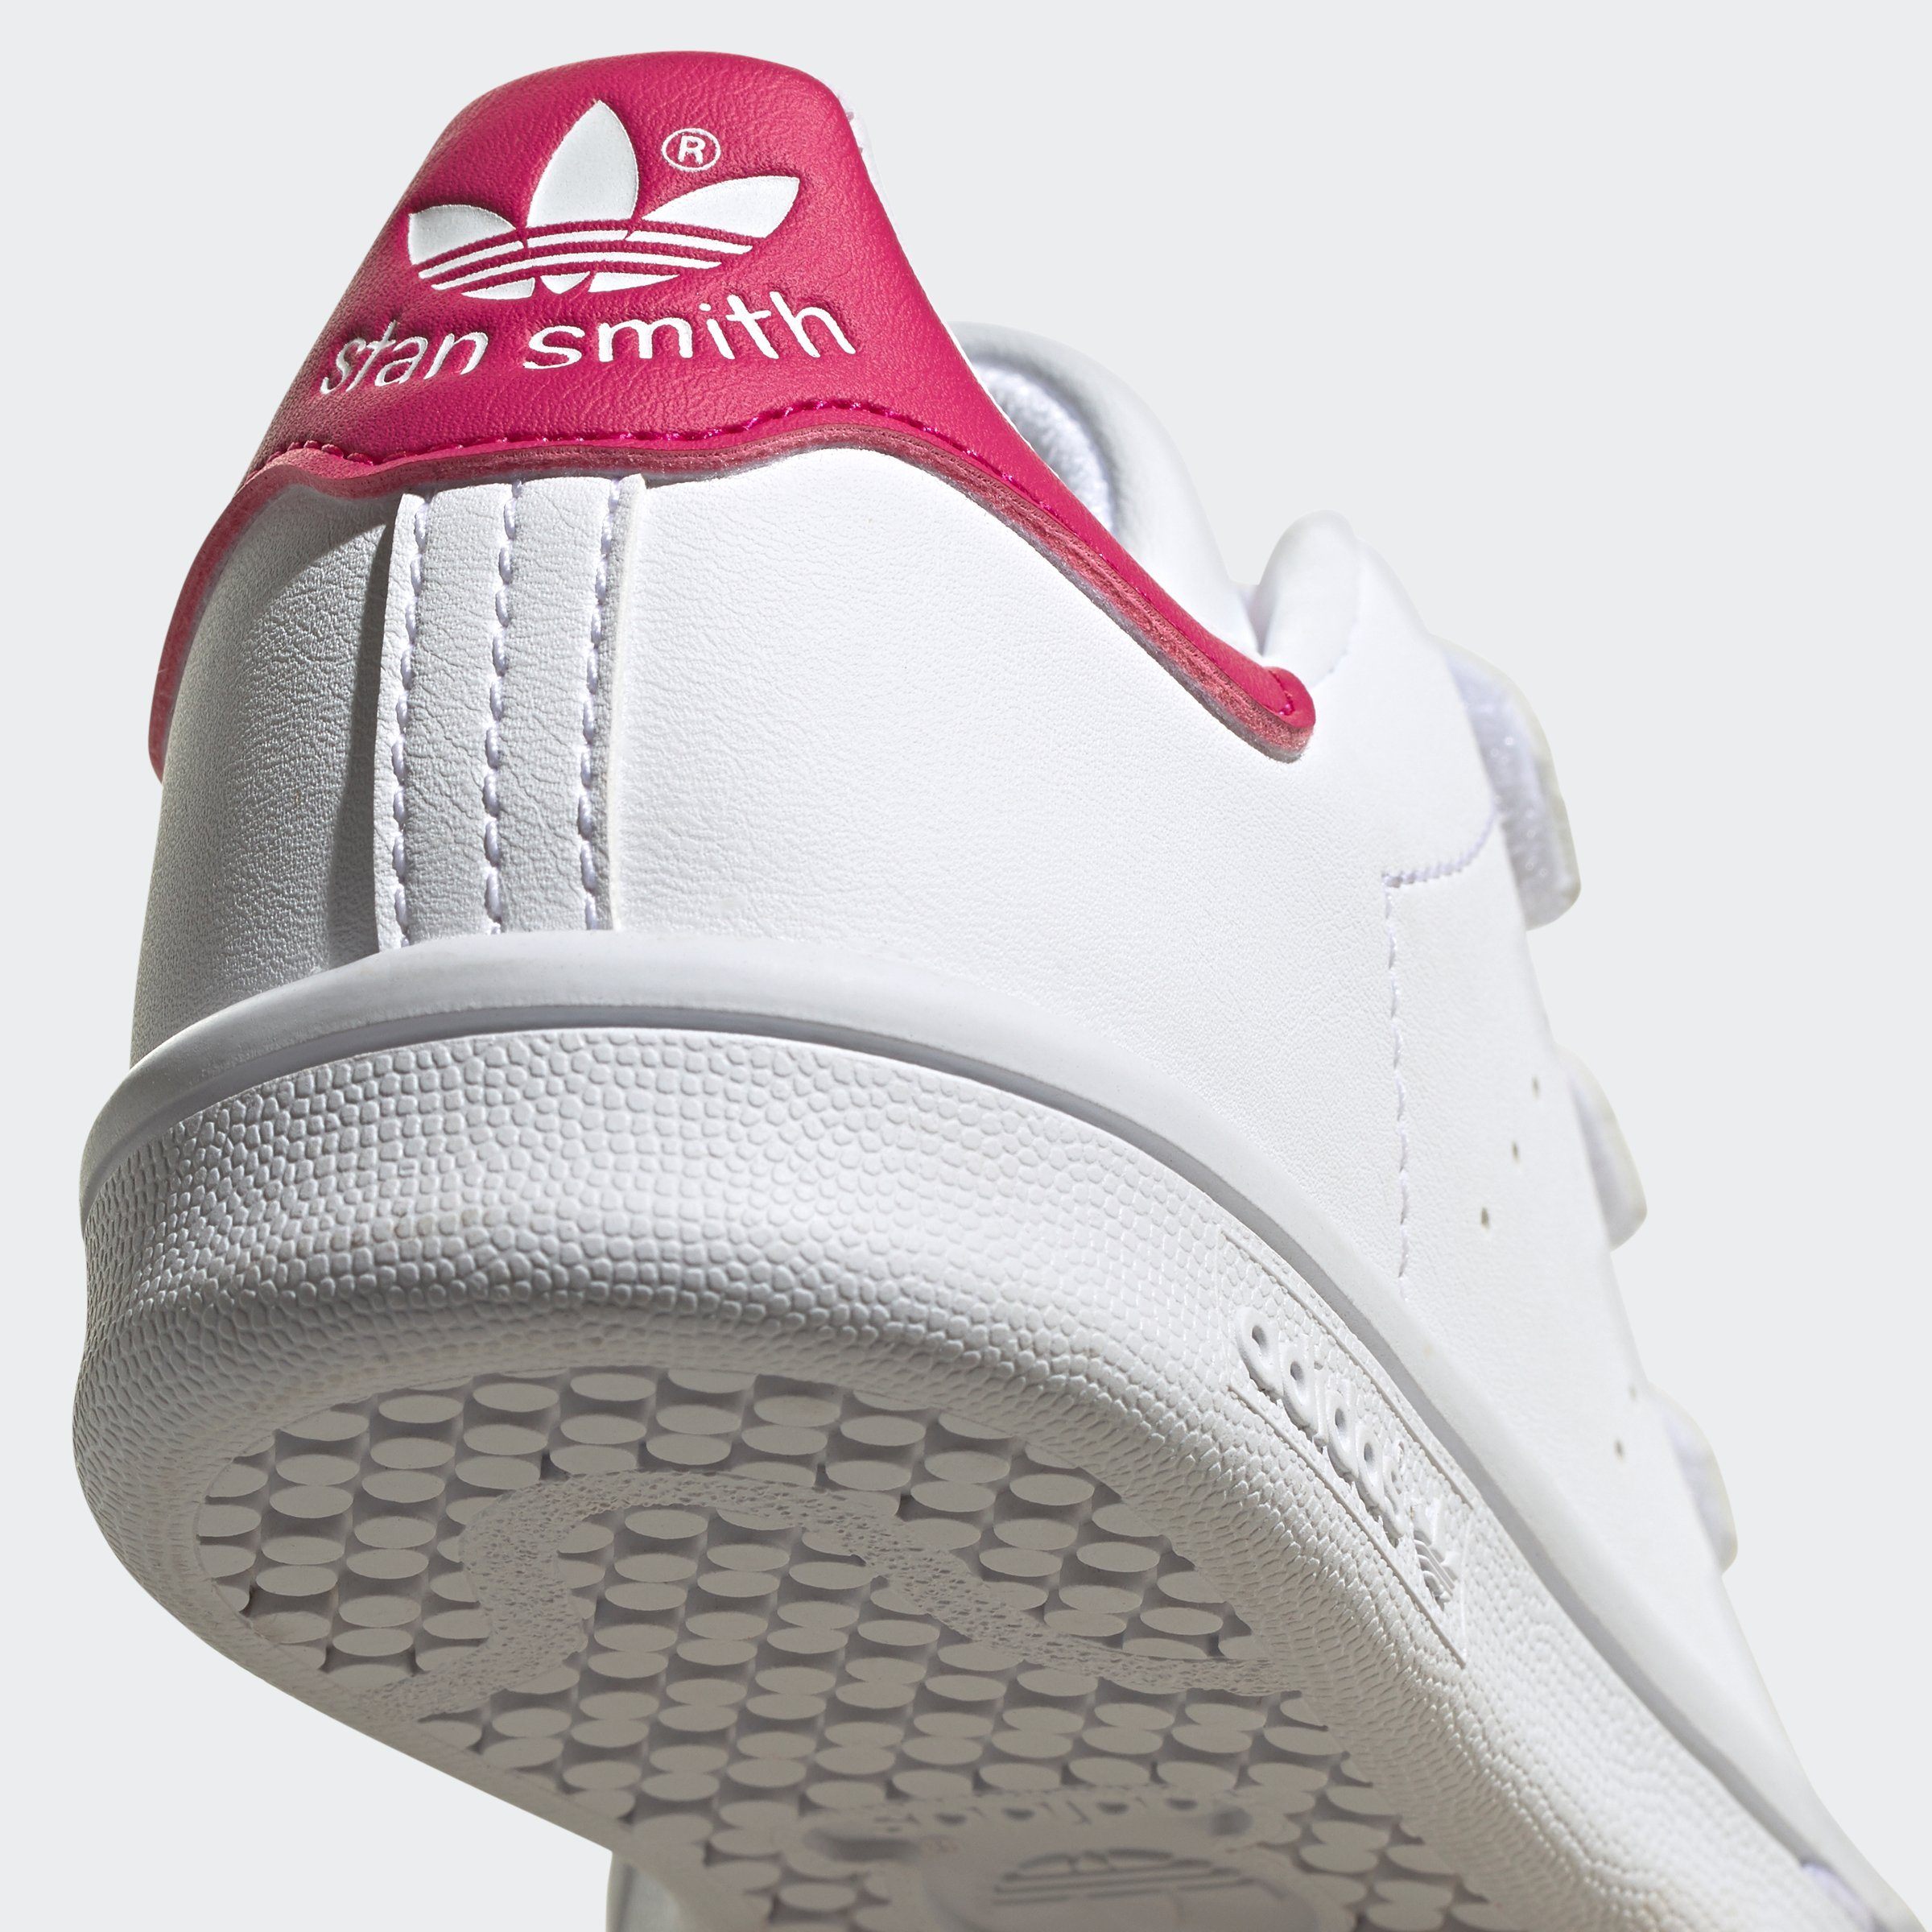 Originals SMITH STAN Cloud White Klettverschluss Sneaker Pink / adidas Cloud White Bold / mit